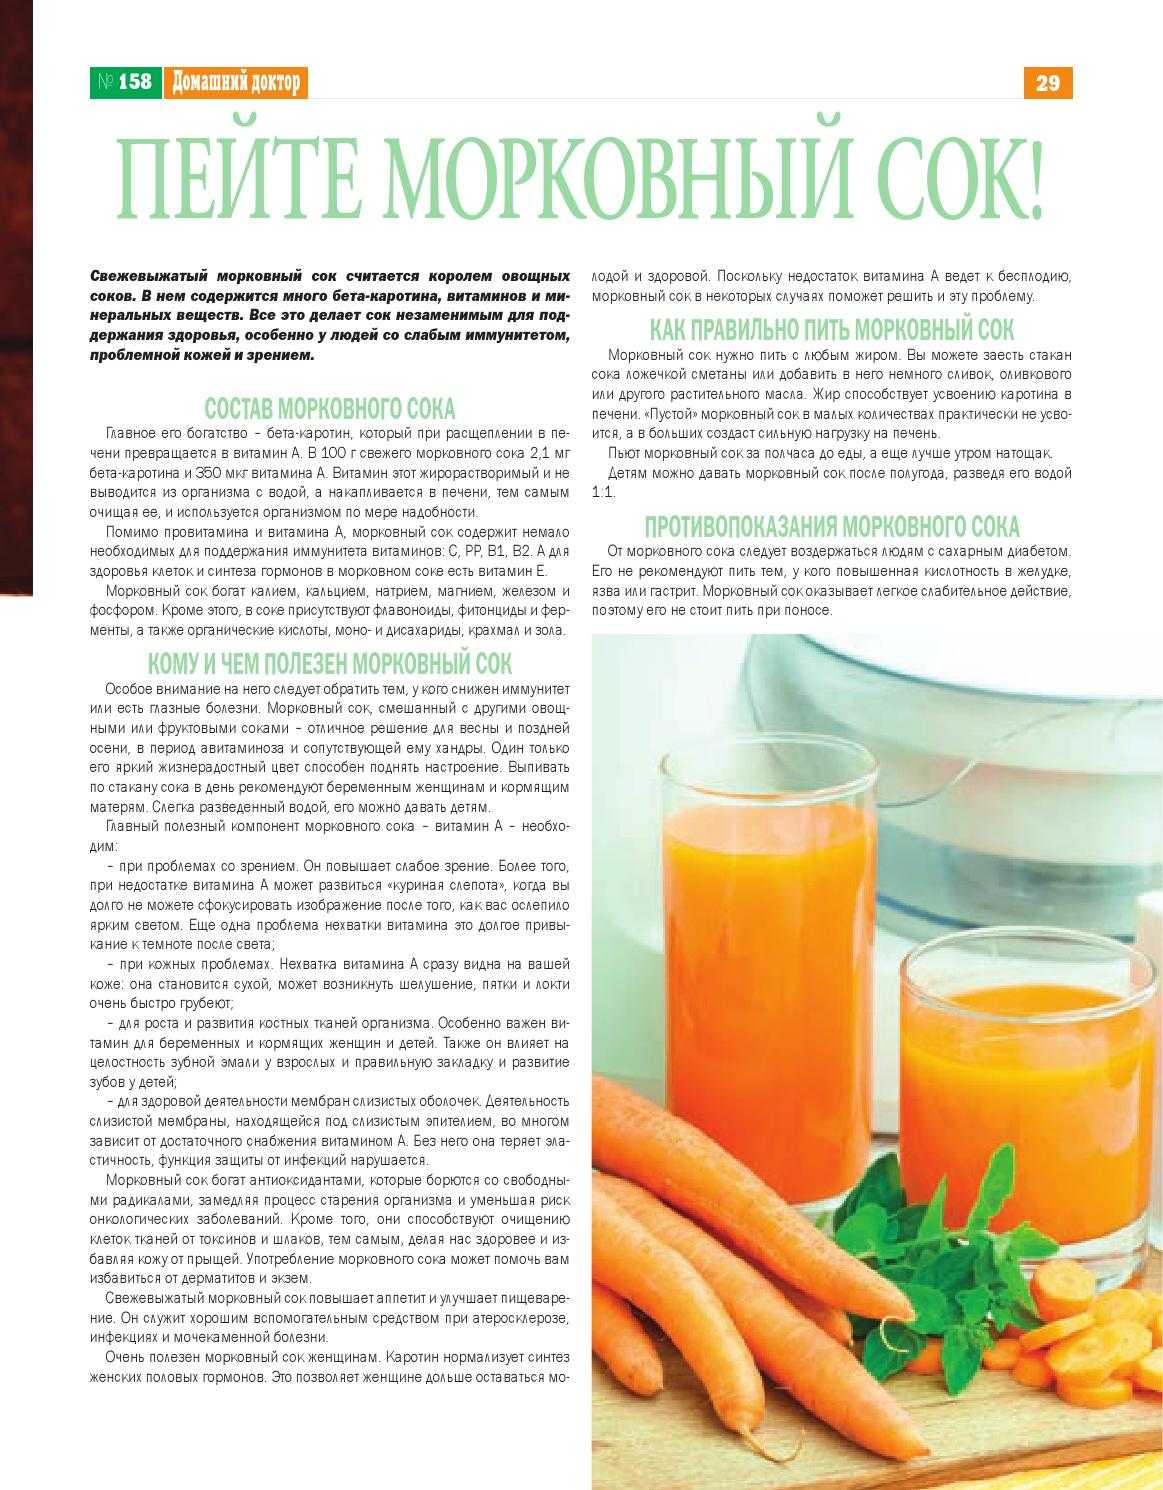 Польза и вред морковного сока | сайт для здорового образа жизни